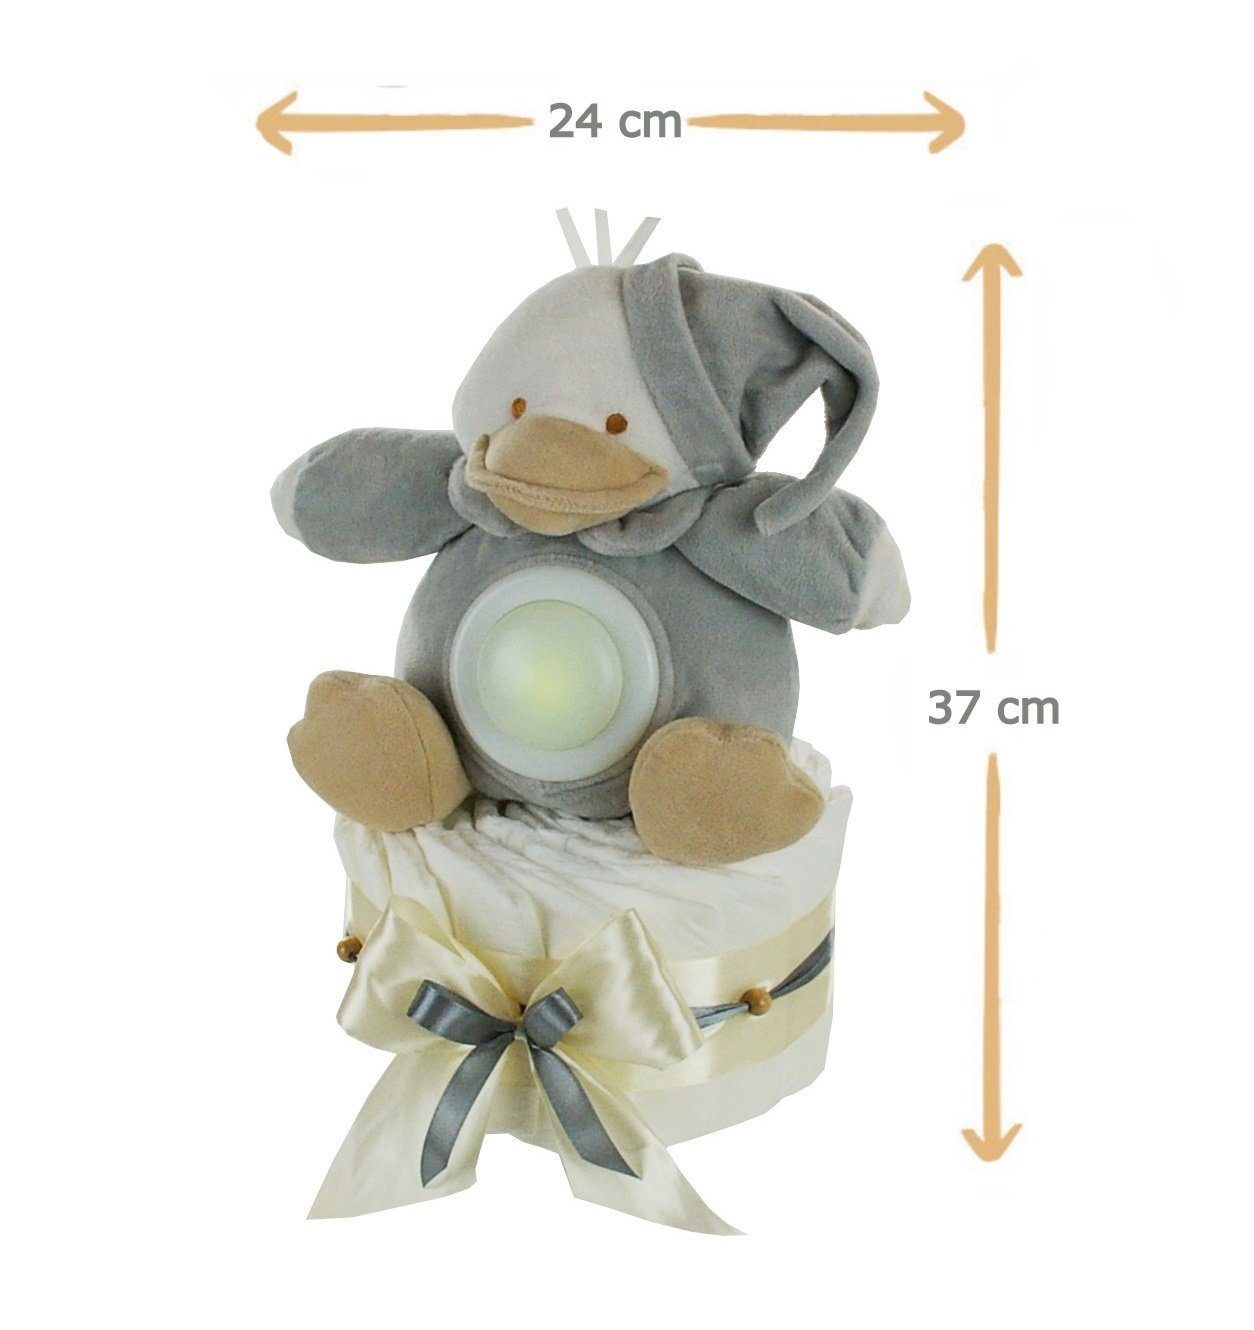 dubistda-WINDELTORTEN- Neugeborenen-Geschenkset Neutrale + Windeltorte LED-Nachtlicht Grußkarte Ente Kuscheltier 35cm